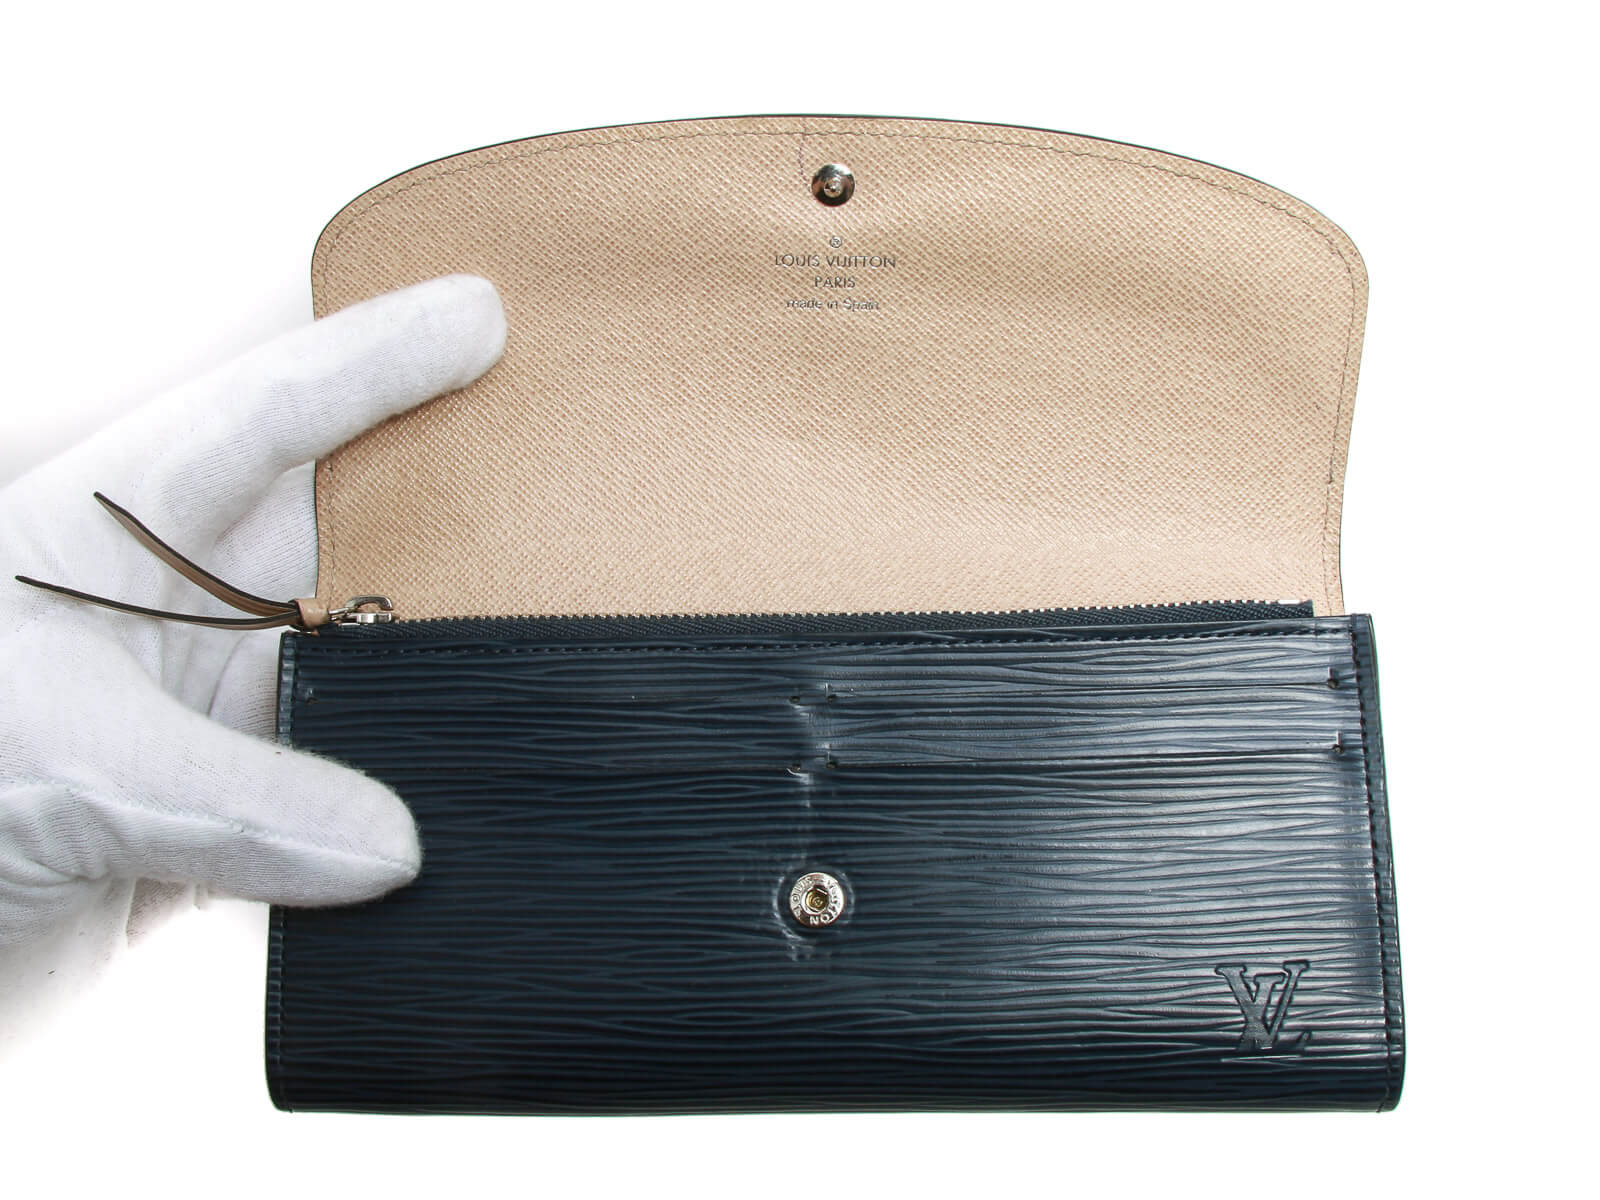 Authentic Louis Vuitton Epi Leather Portefeuille Emilie Wallet Indigo blue | Connect Japan Luxury